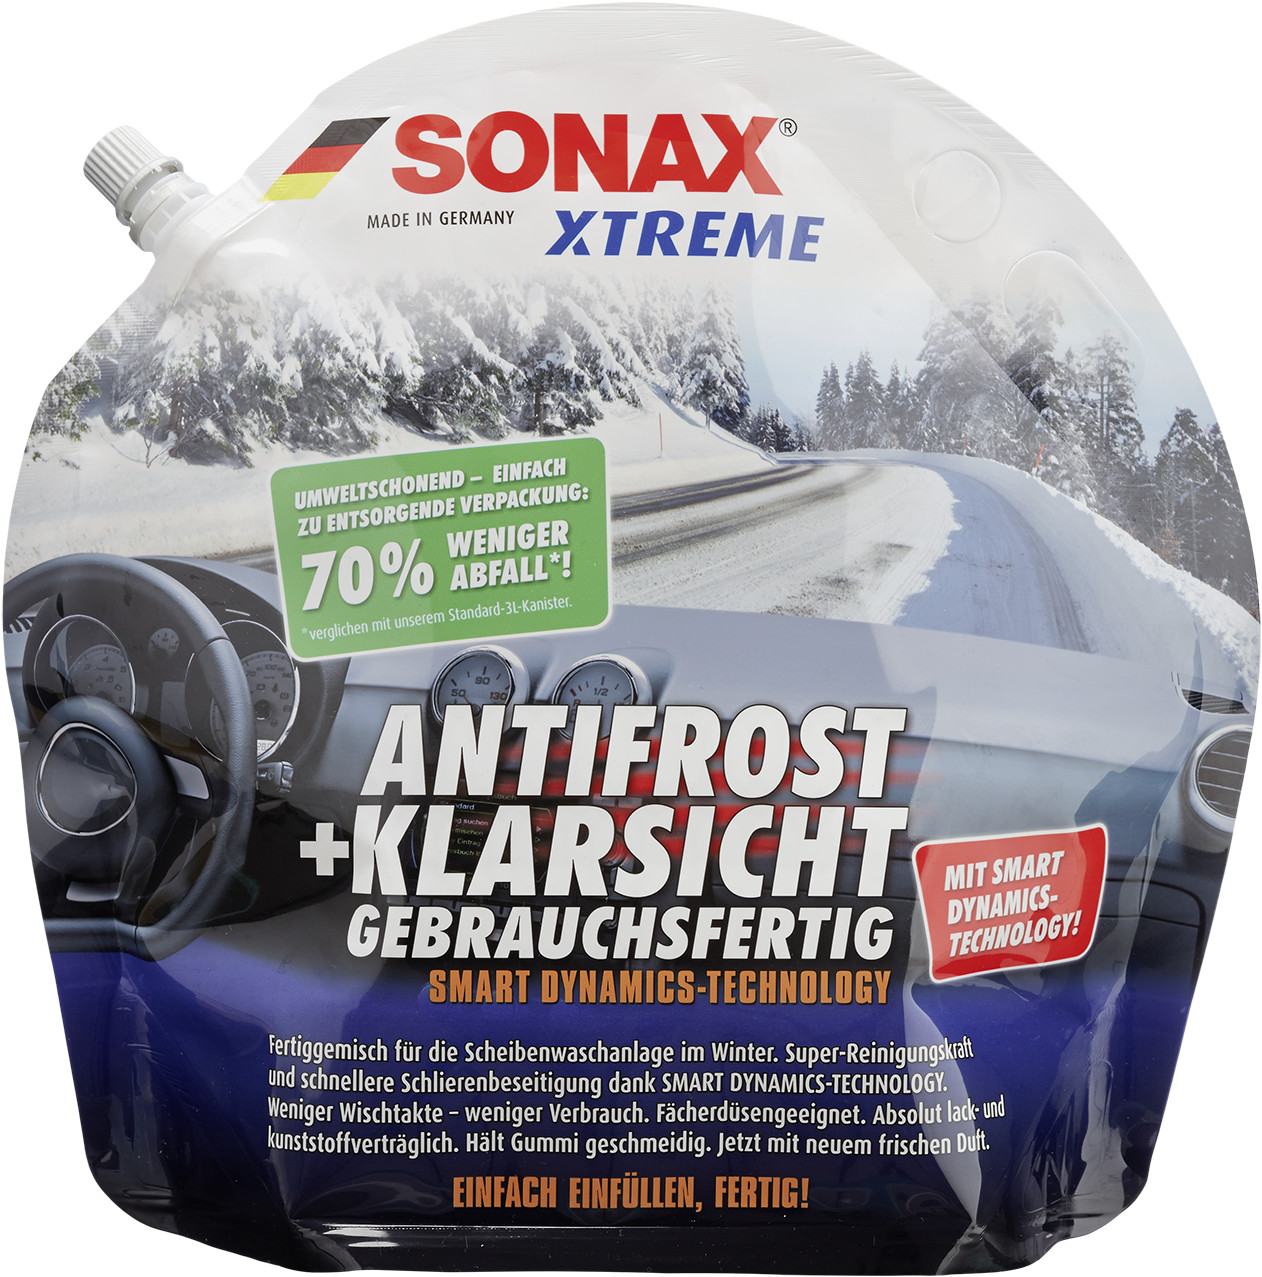 SONAX XTREME AntiFrost+KlarSicht kaufen, Theunissen GmbH